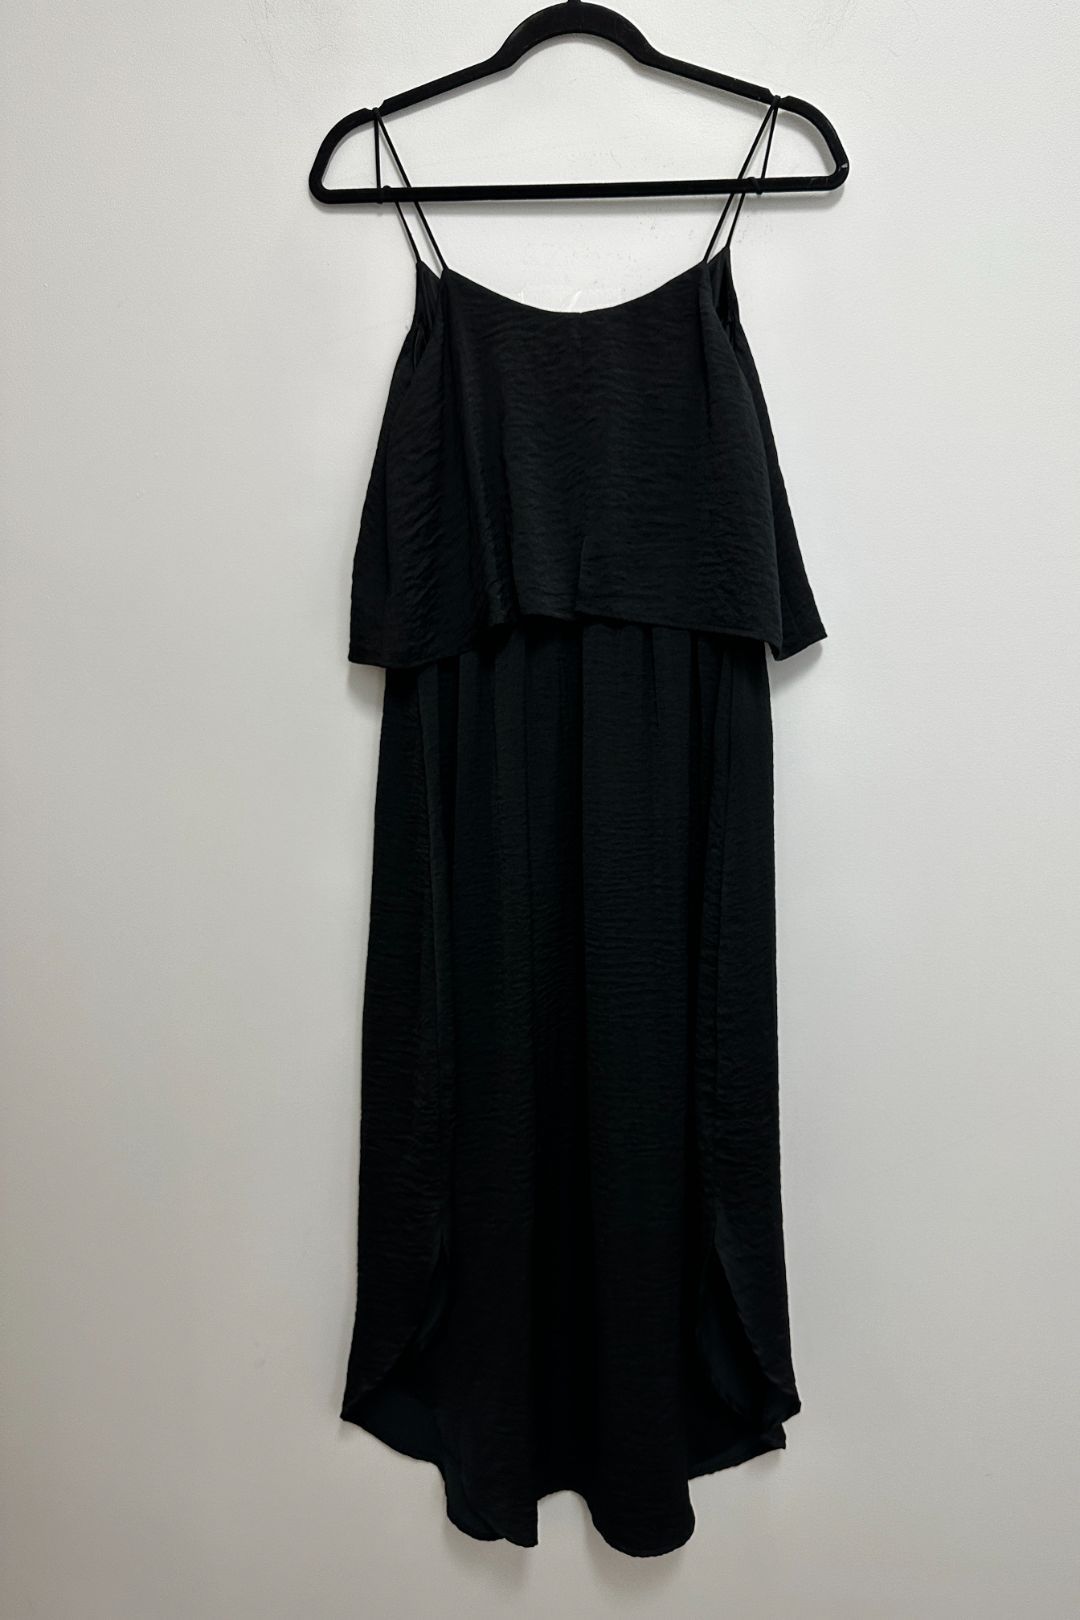 Ripe Maternity - Nursing Midi Slip Dress in Black